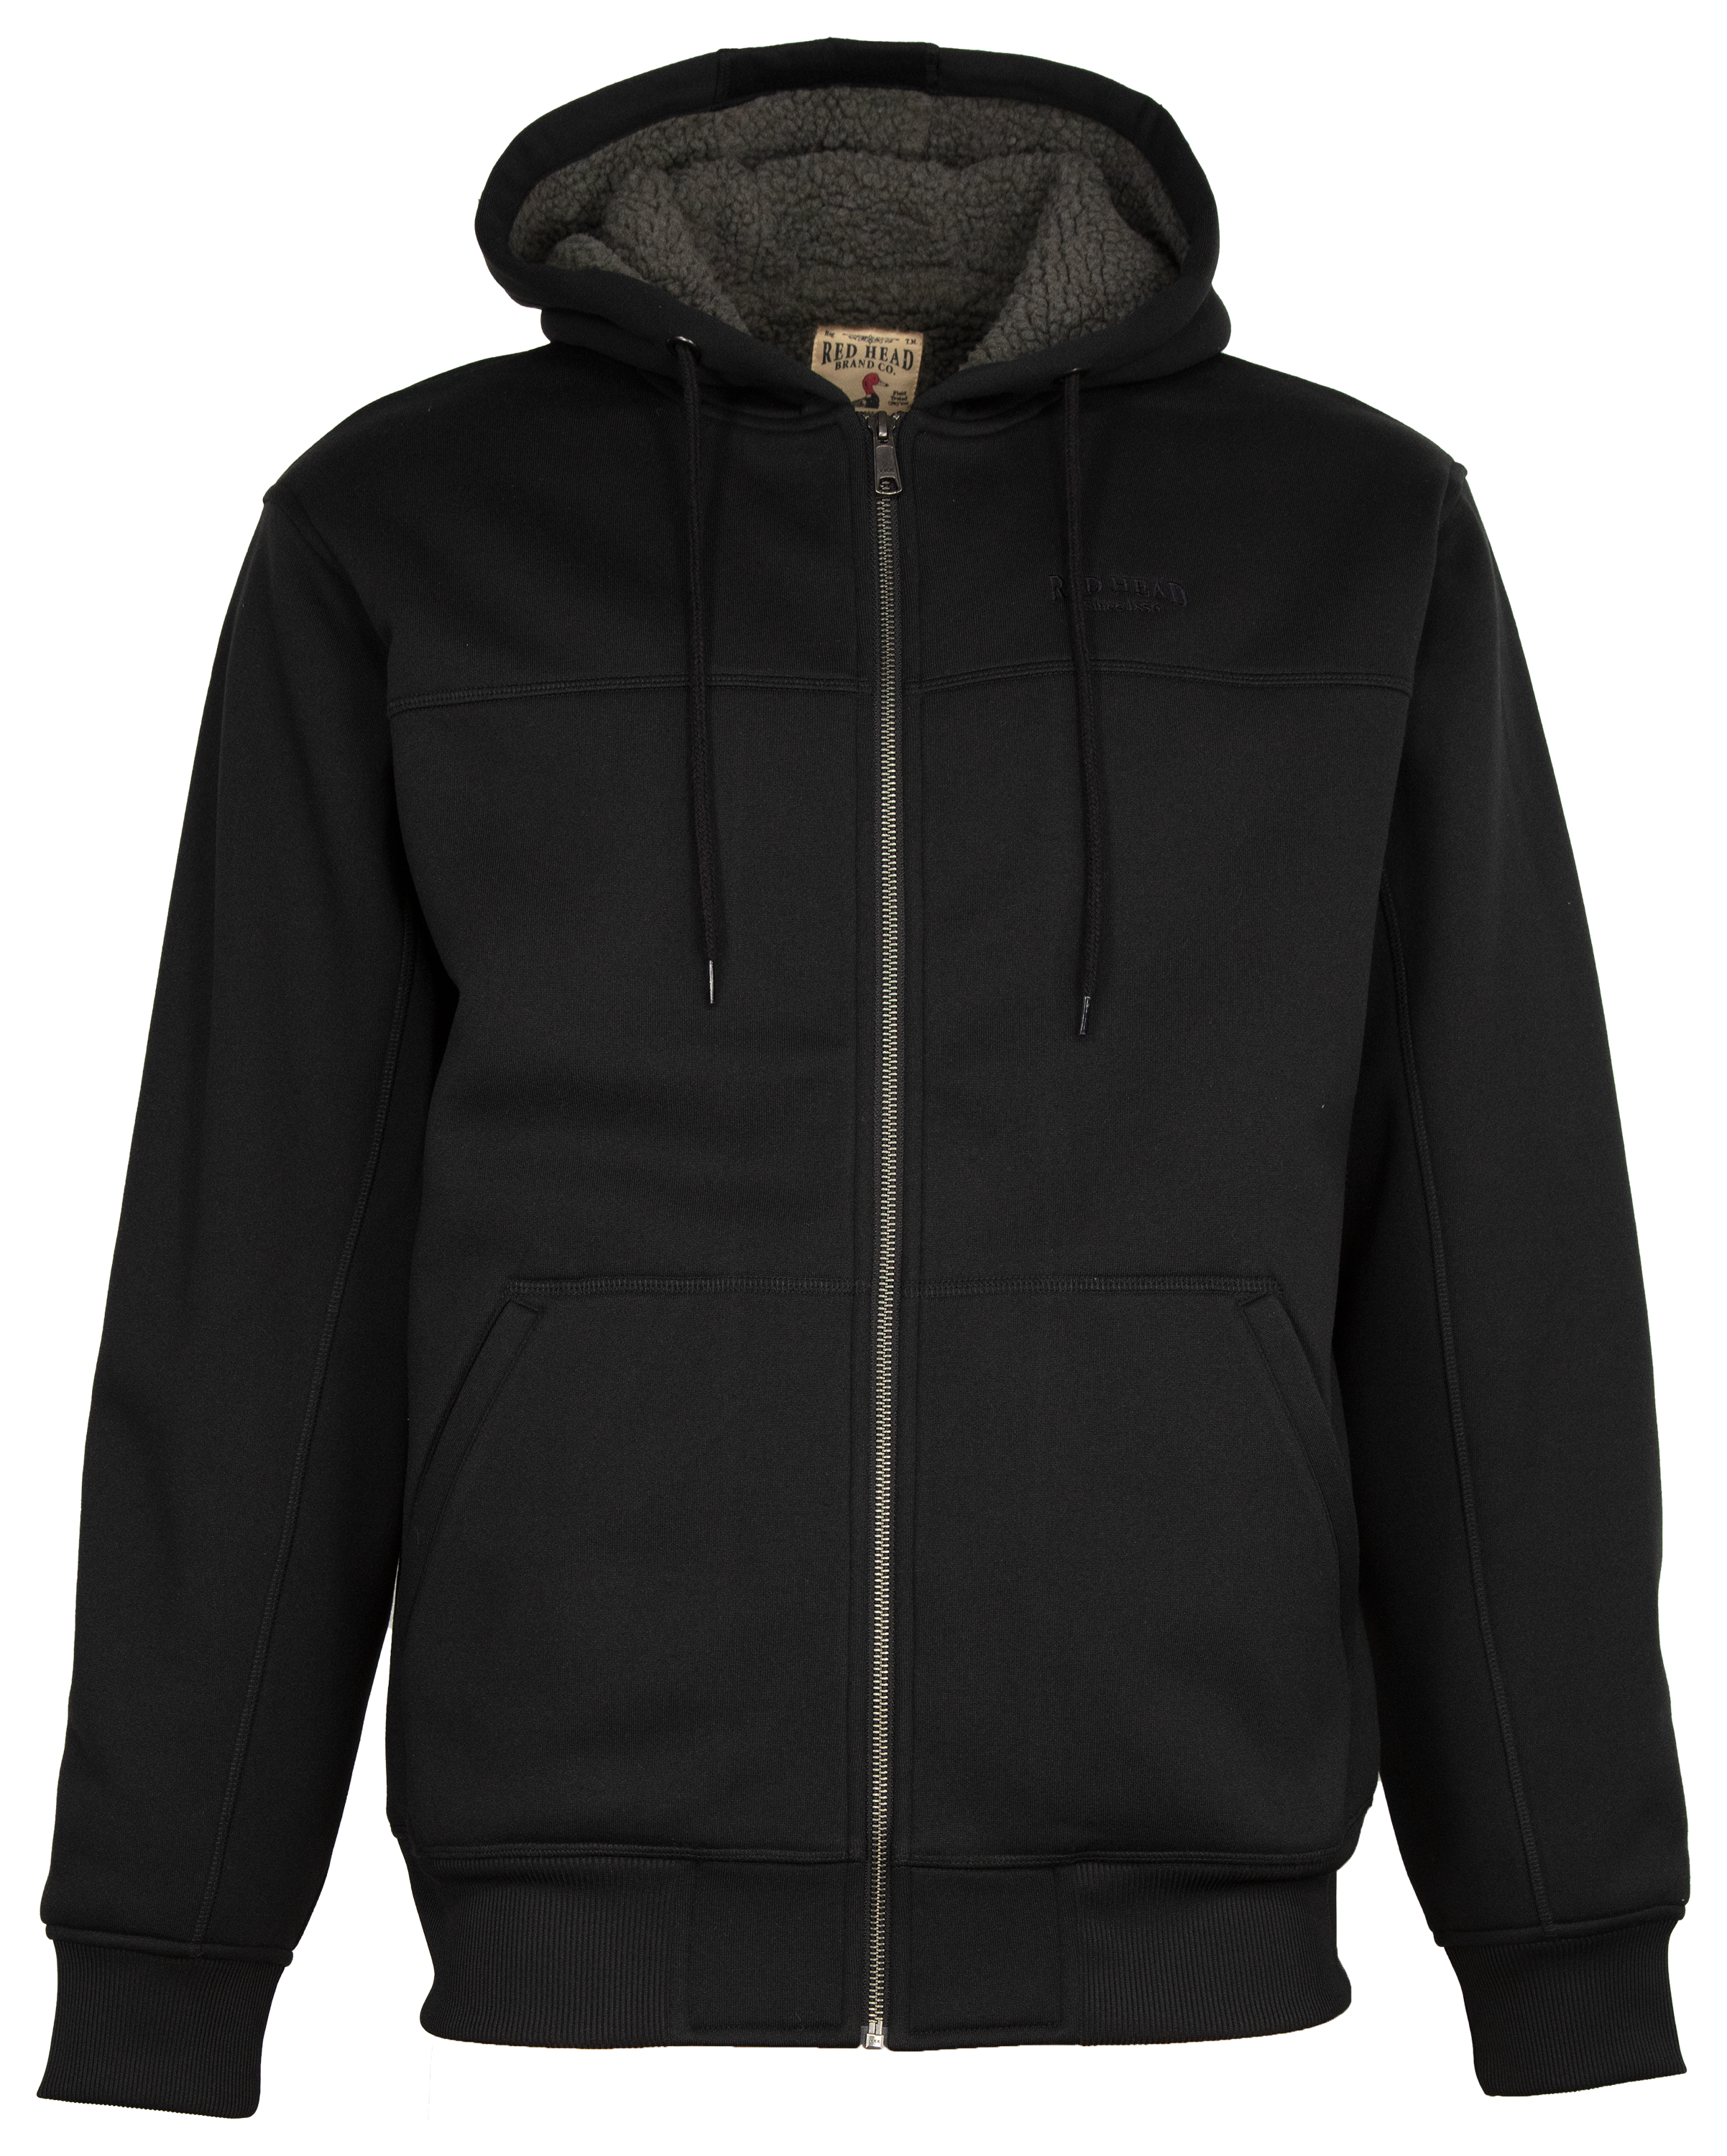 Fleece Jacket for Women Clearance Sale,Winter Warm Sherpa Lined